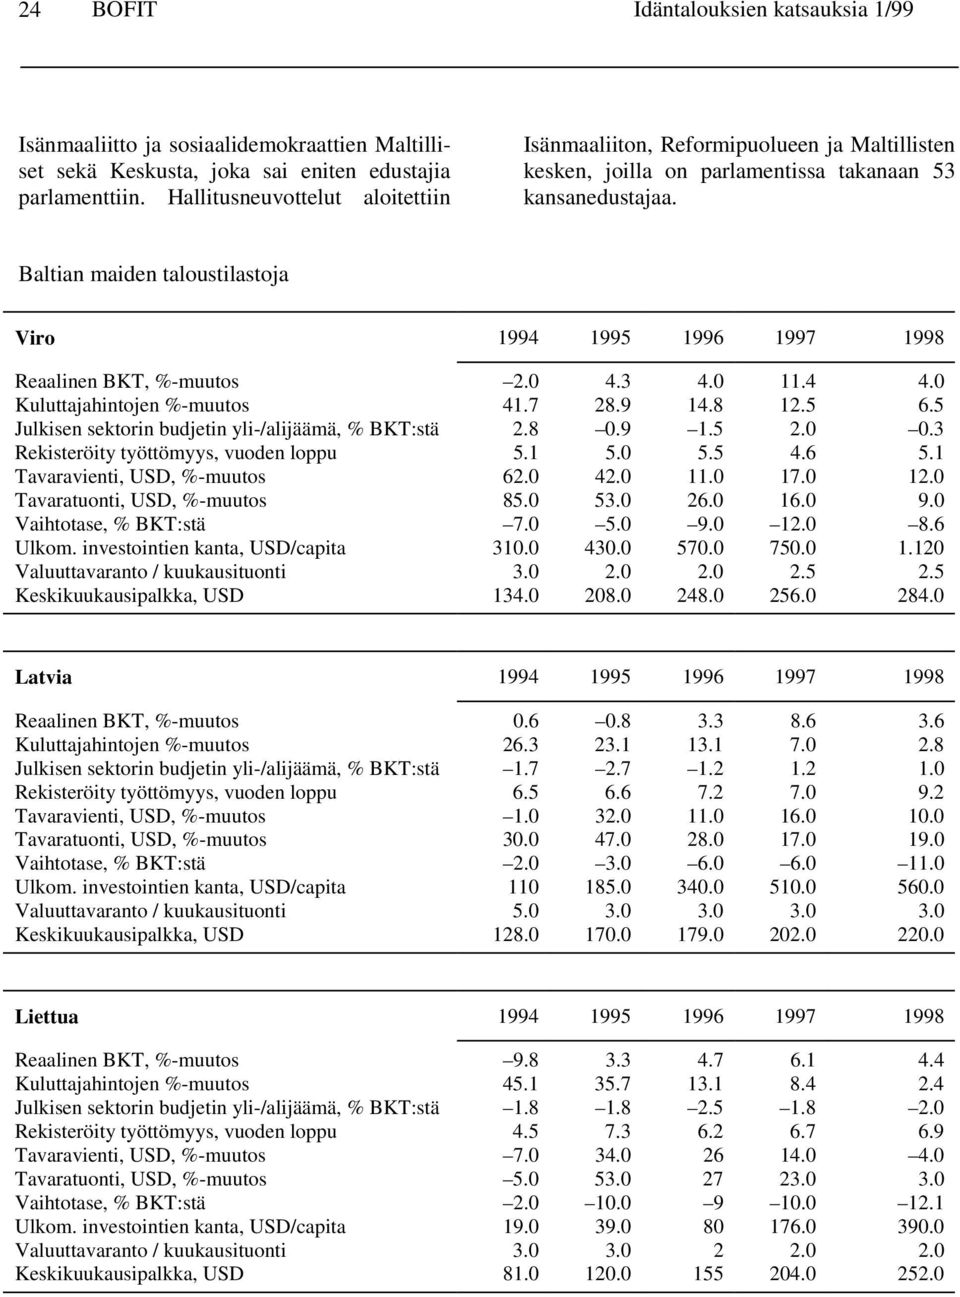 Baltian maiden taloustilastoja Viro 1994 1995 1996 1997 1998 Reaalinen BKT, %-muutos 2.0 4.3 4.0 11.4 4.0 Kuluttajahintojen %-muutos 41.7 28.9 14.8 12.5 6.